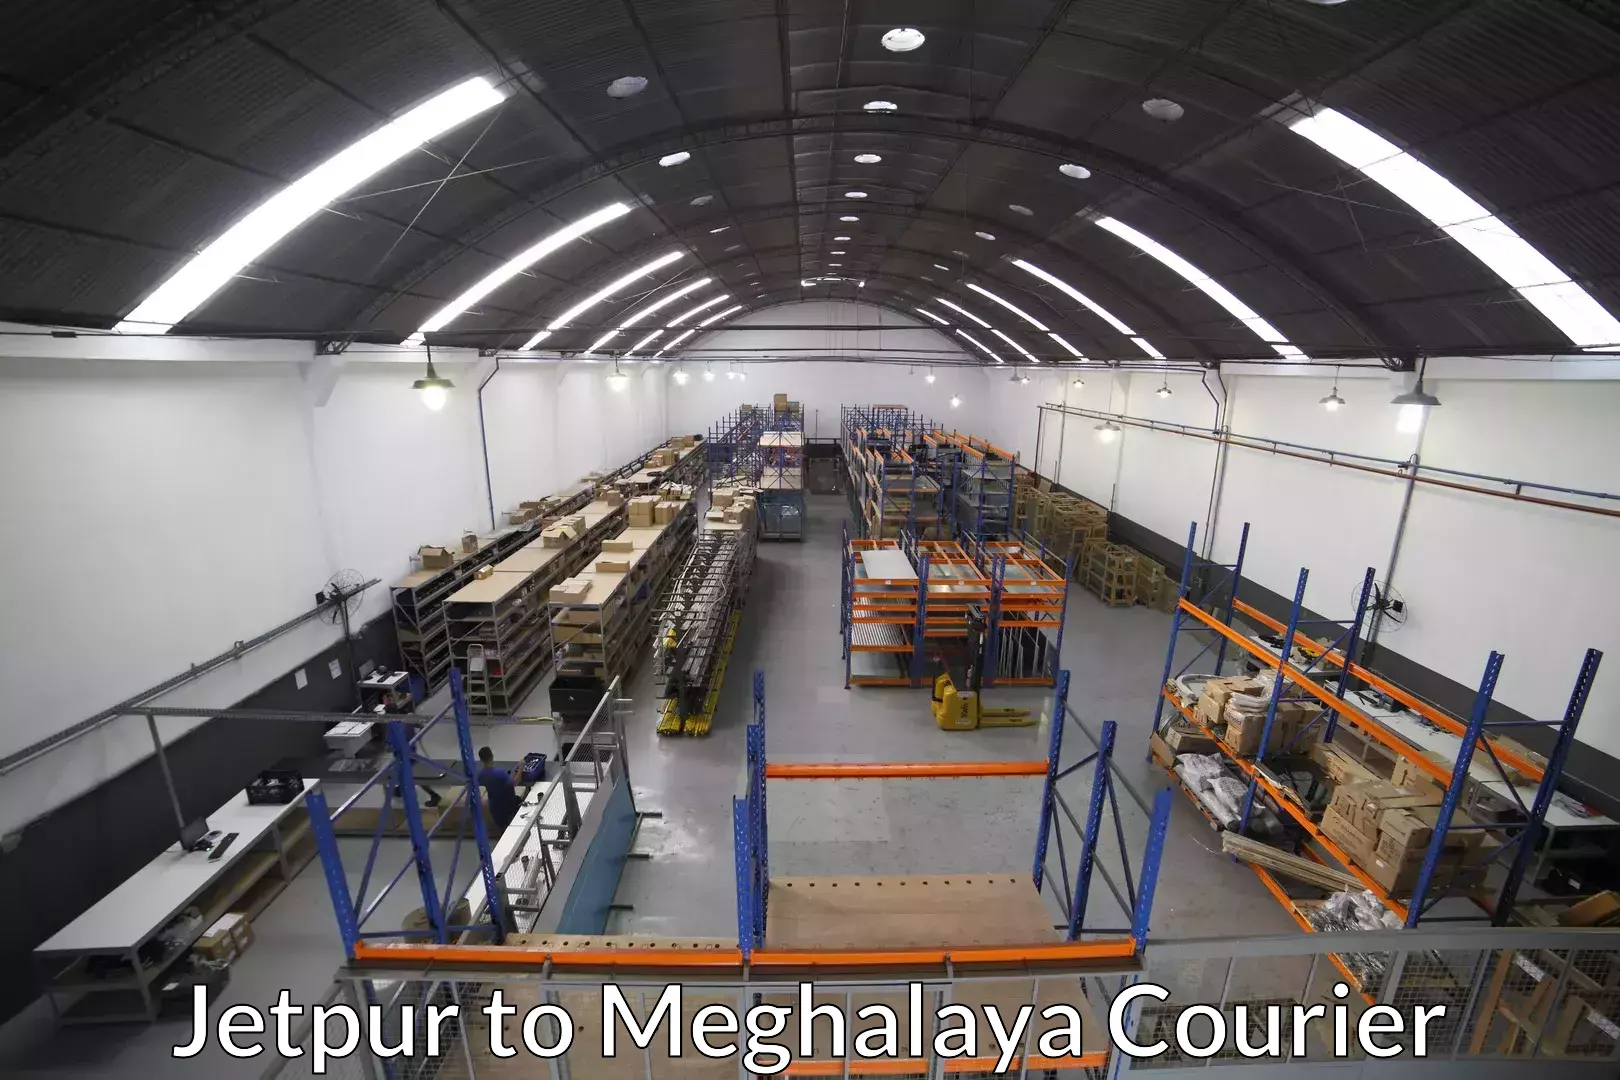 Reliable movers Jetpur to Meghalaya